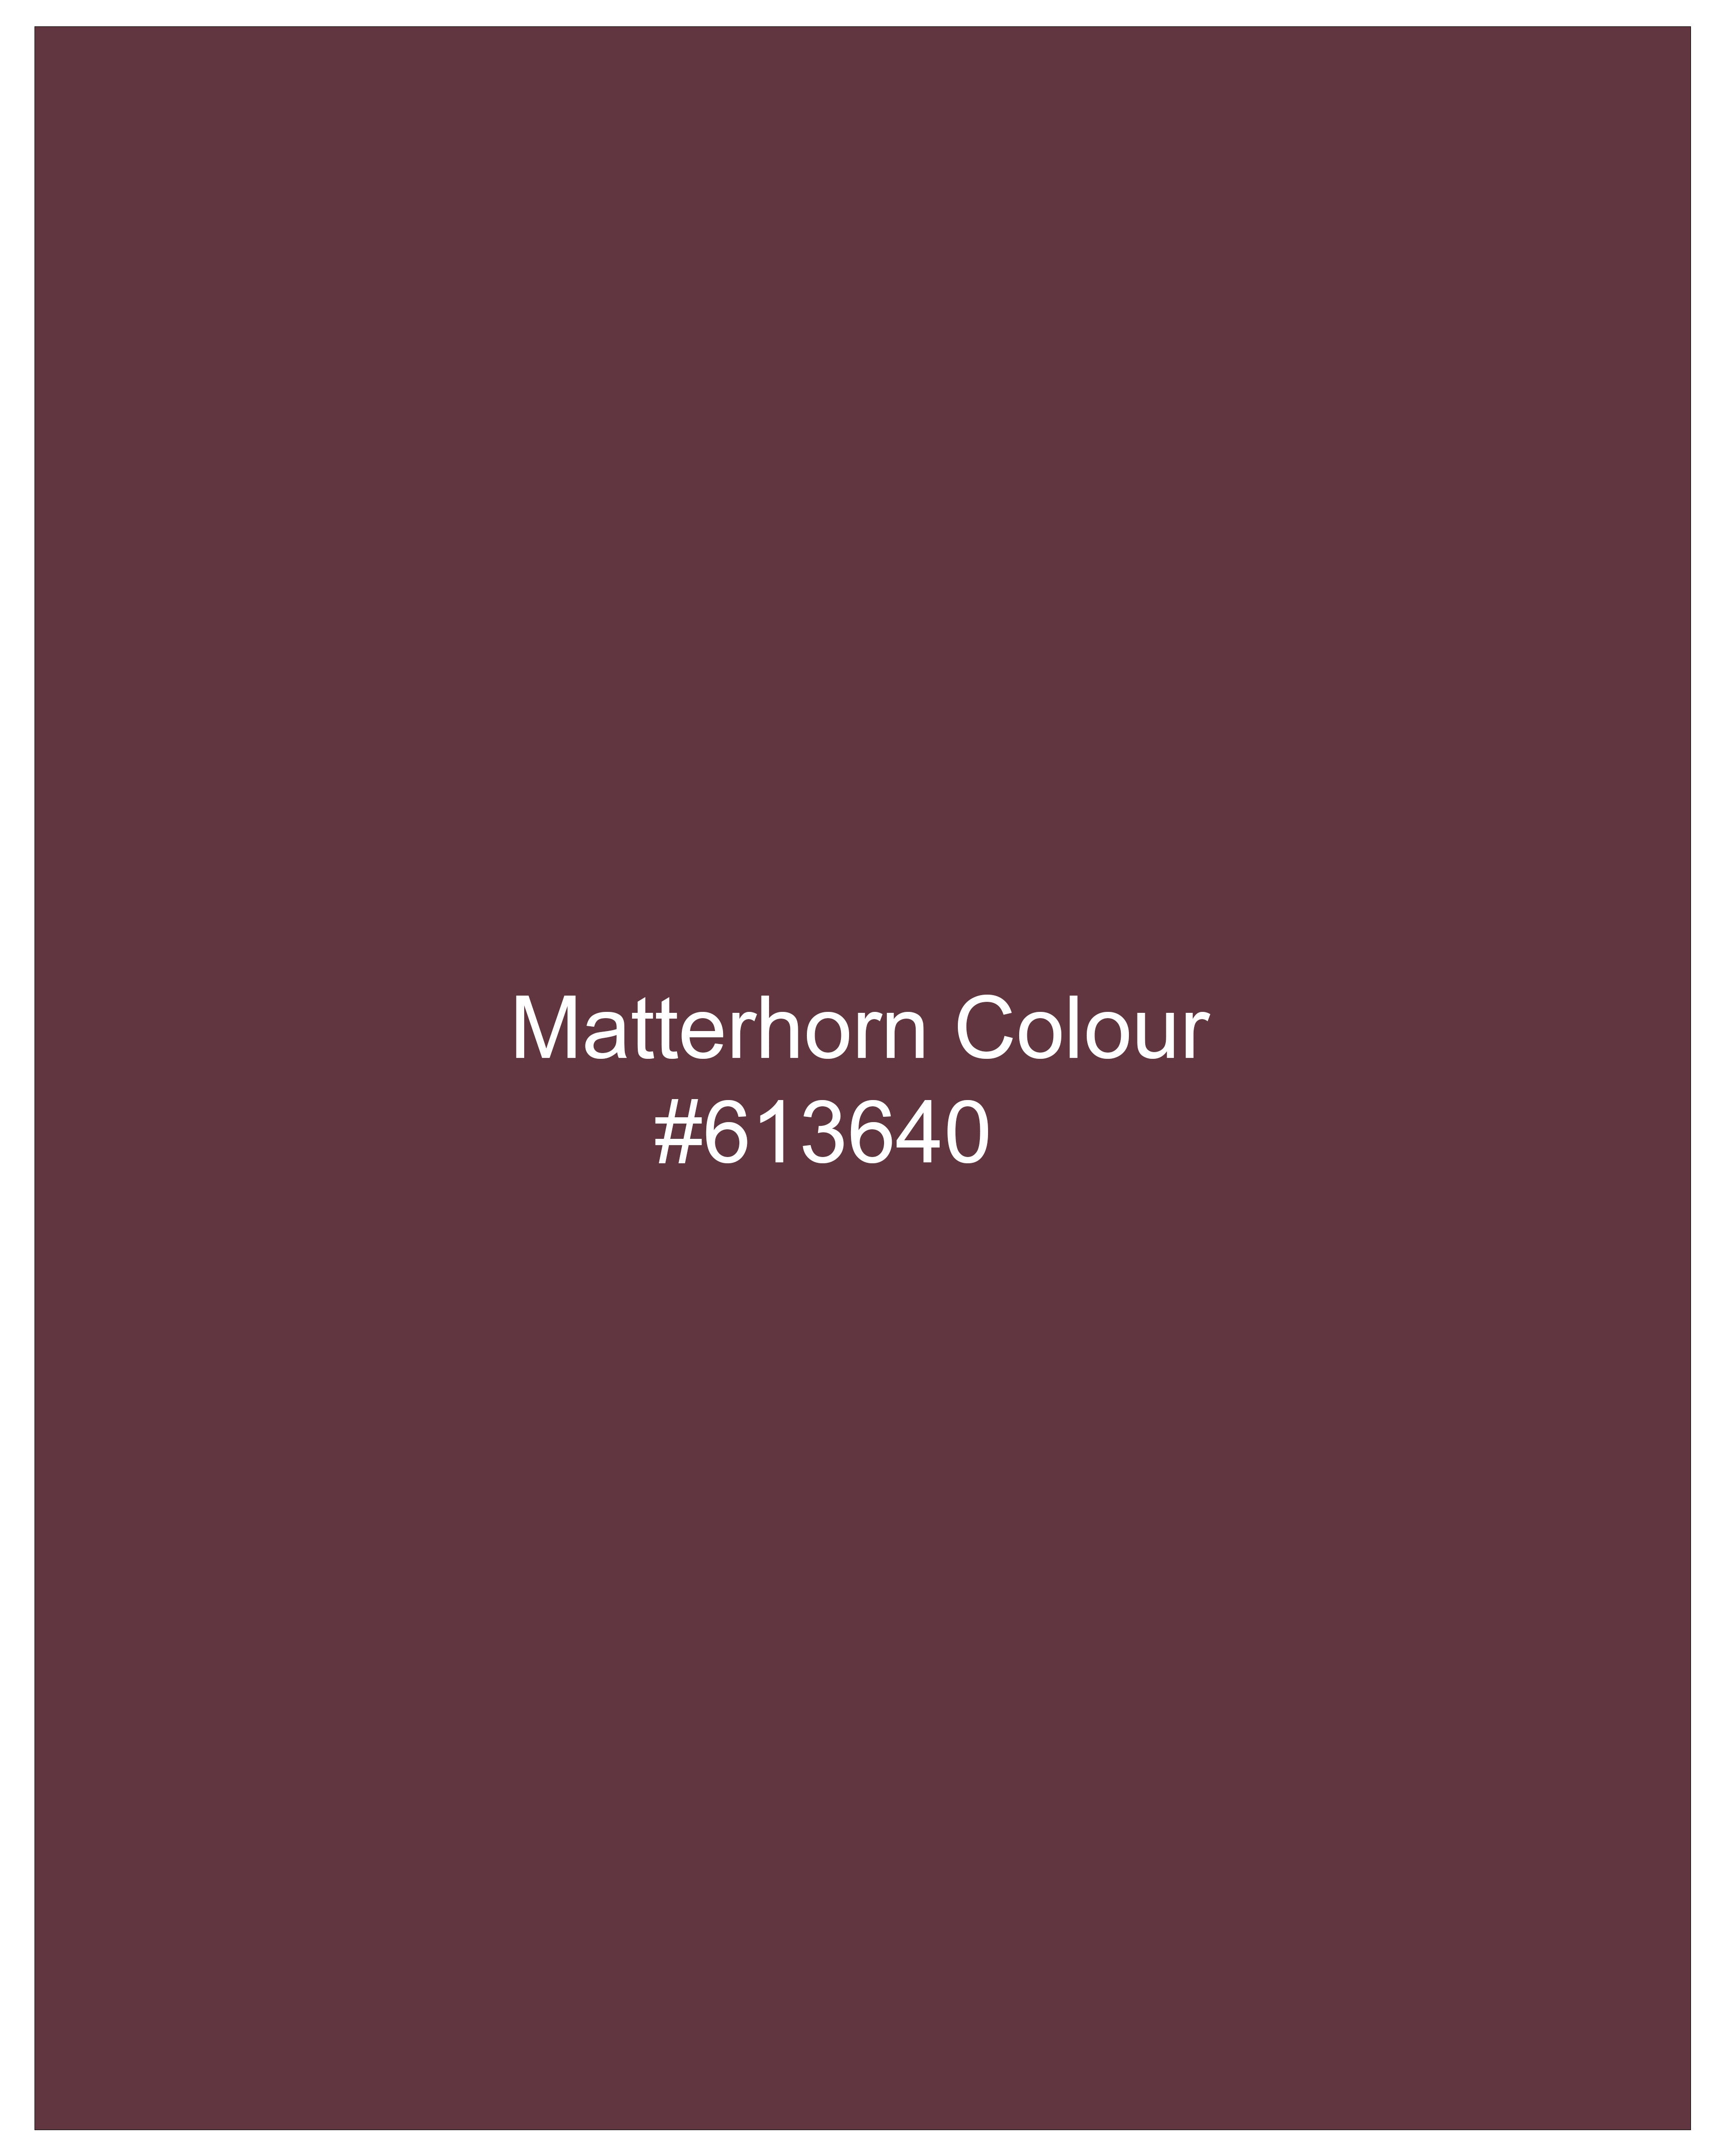 Matterhorn Marron Wool Rich Pants T2516-28, T2516-30, T2516-32, T2516-34, T2516-36, T2516-38, T2516-40, T2516-42, T2516-44